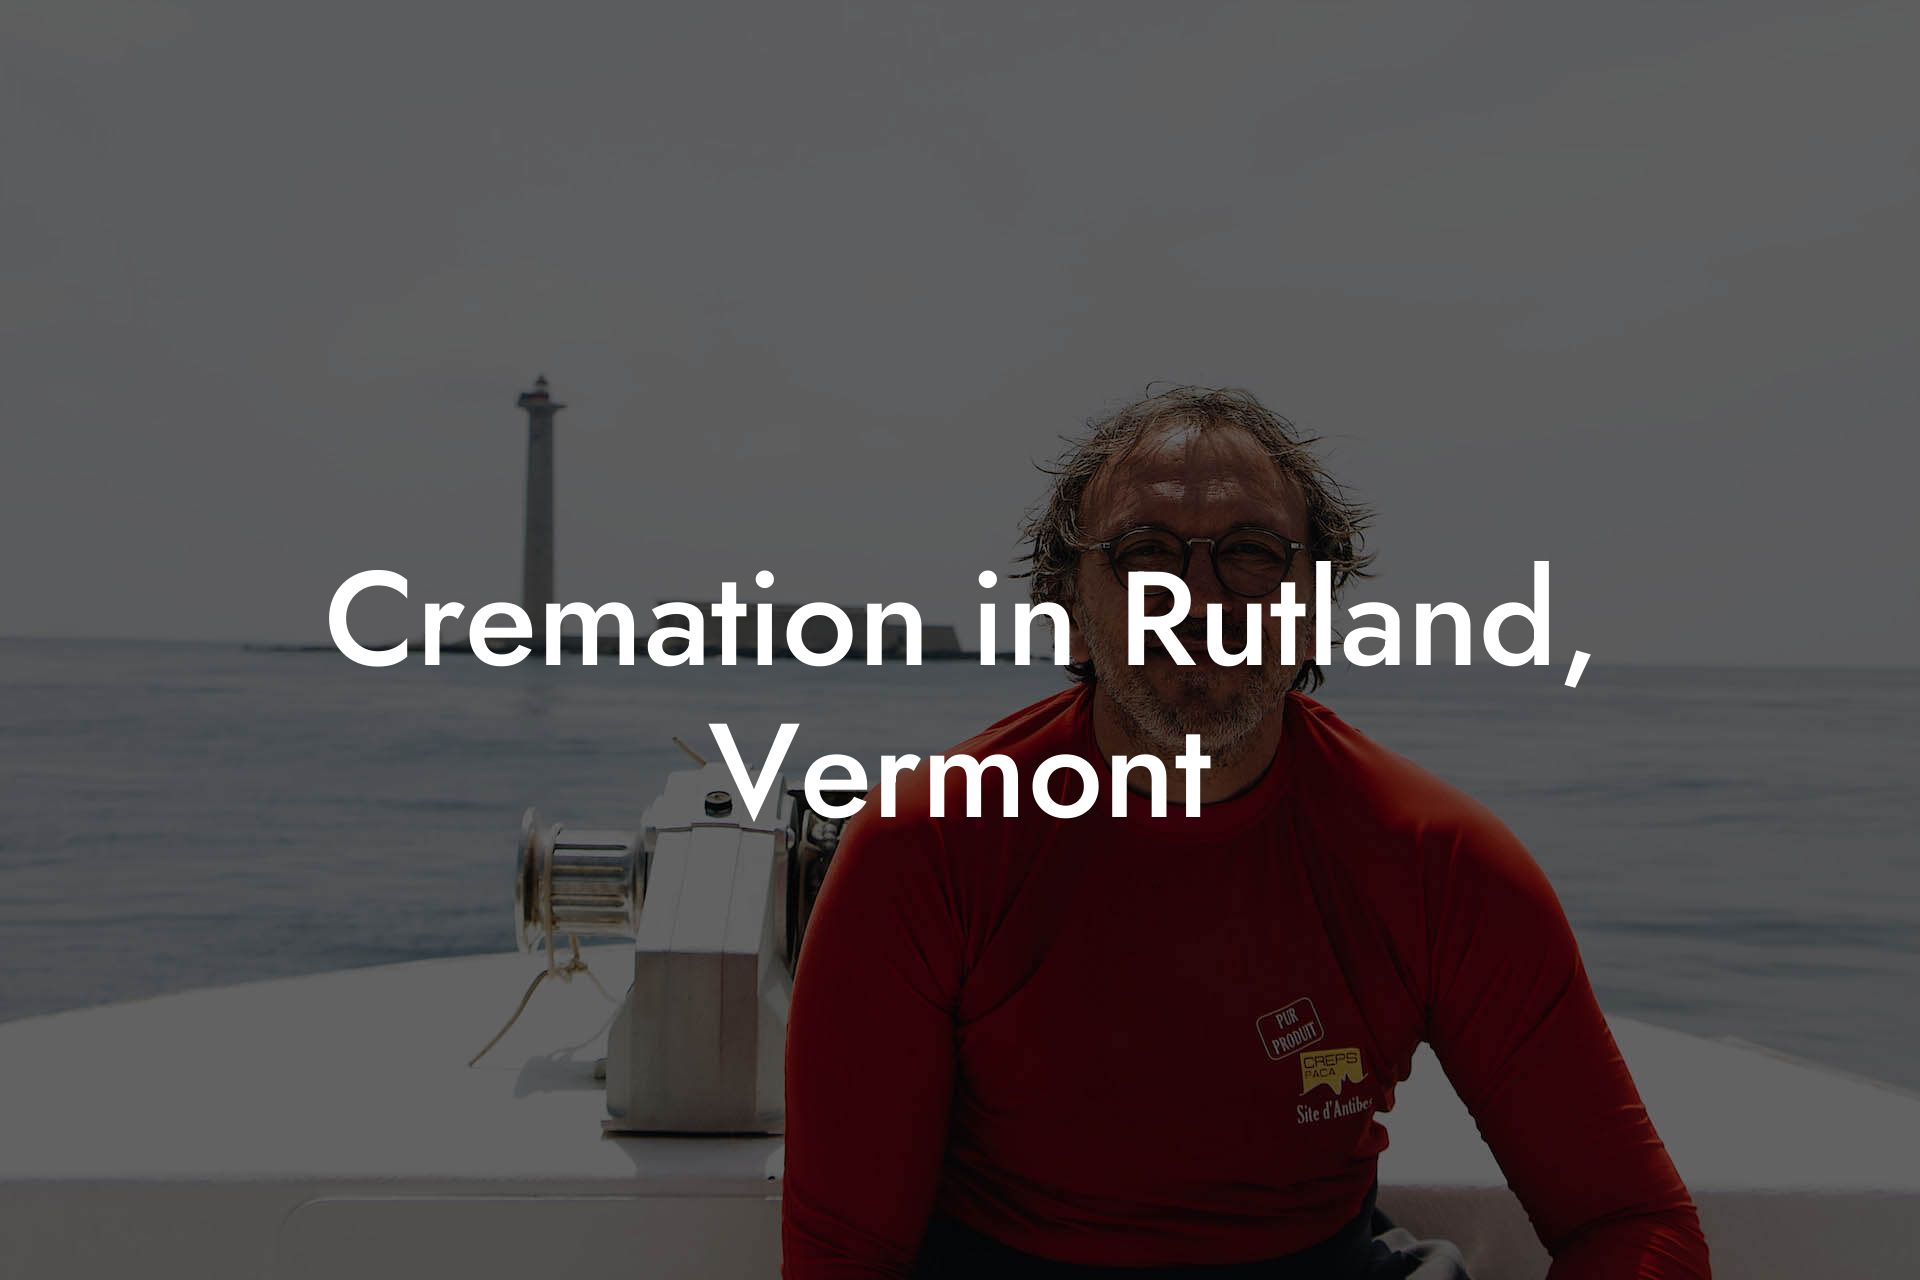 Cremation in Rutland, Vermont